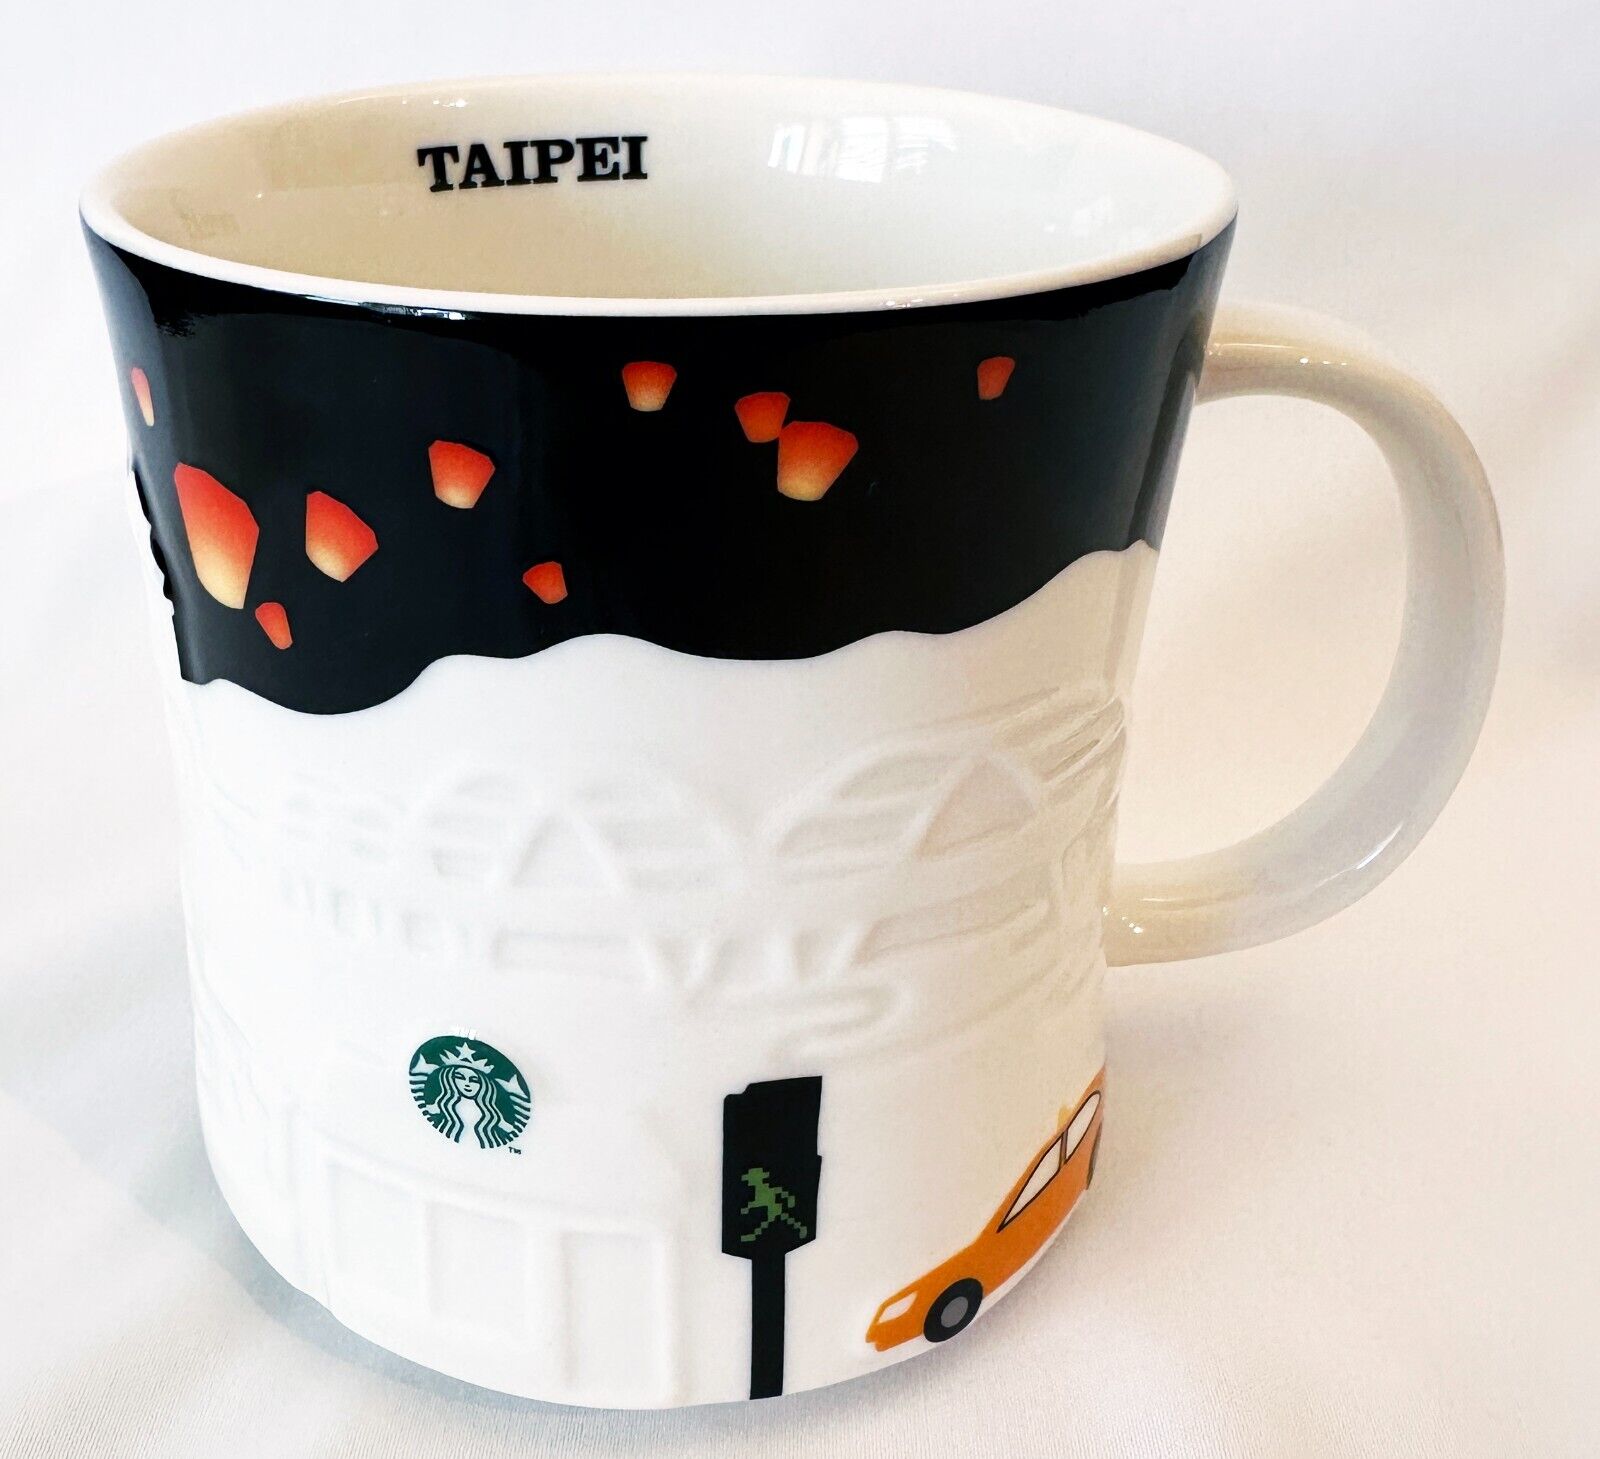 Starbucks Taipei Taiwan Global Icon City Collector Series Mug Cup 16 oz 2013